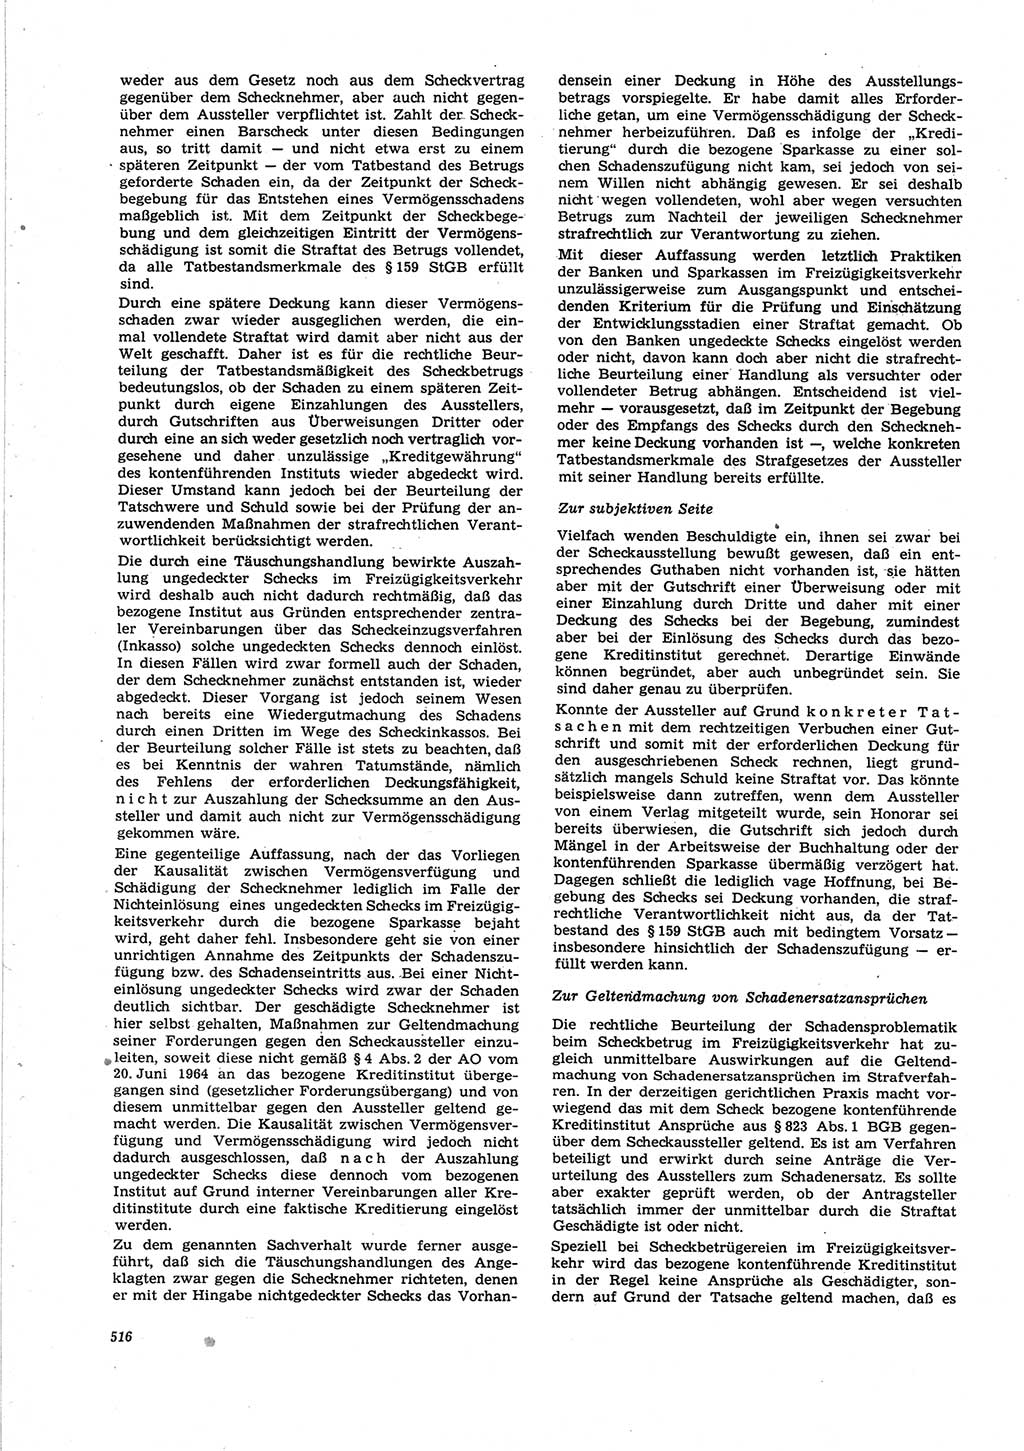 Neue Justiz (NJ), Zeitschrift für Recht und Rechtswissenschaft [Deutsche Demokratische Republik (DDR)], 25. Jahrgang 1971, Seite 516 (NJ DDR 1971, S. 516)